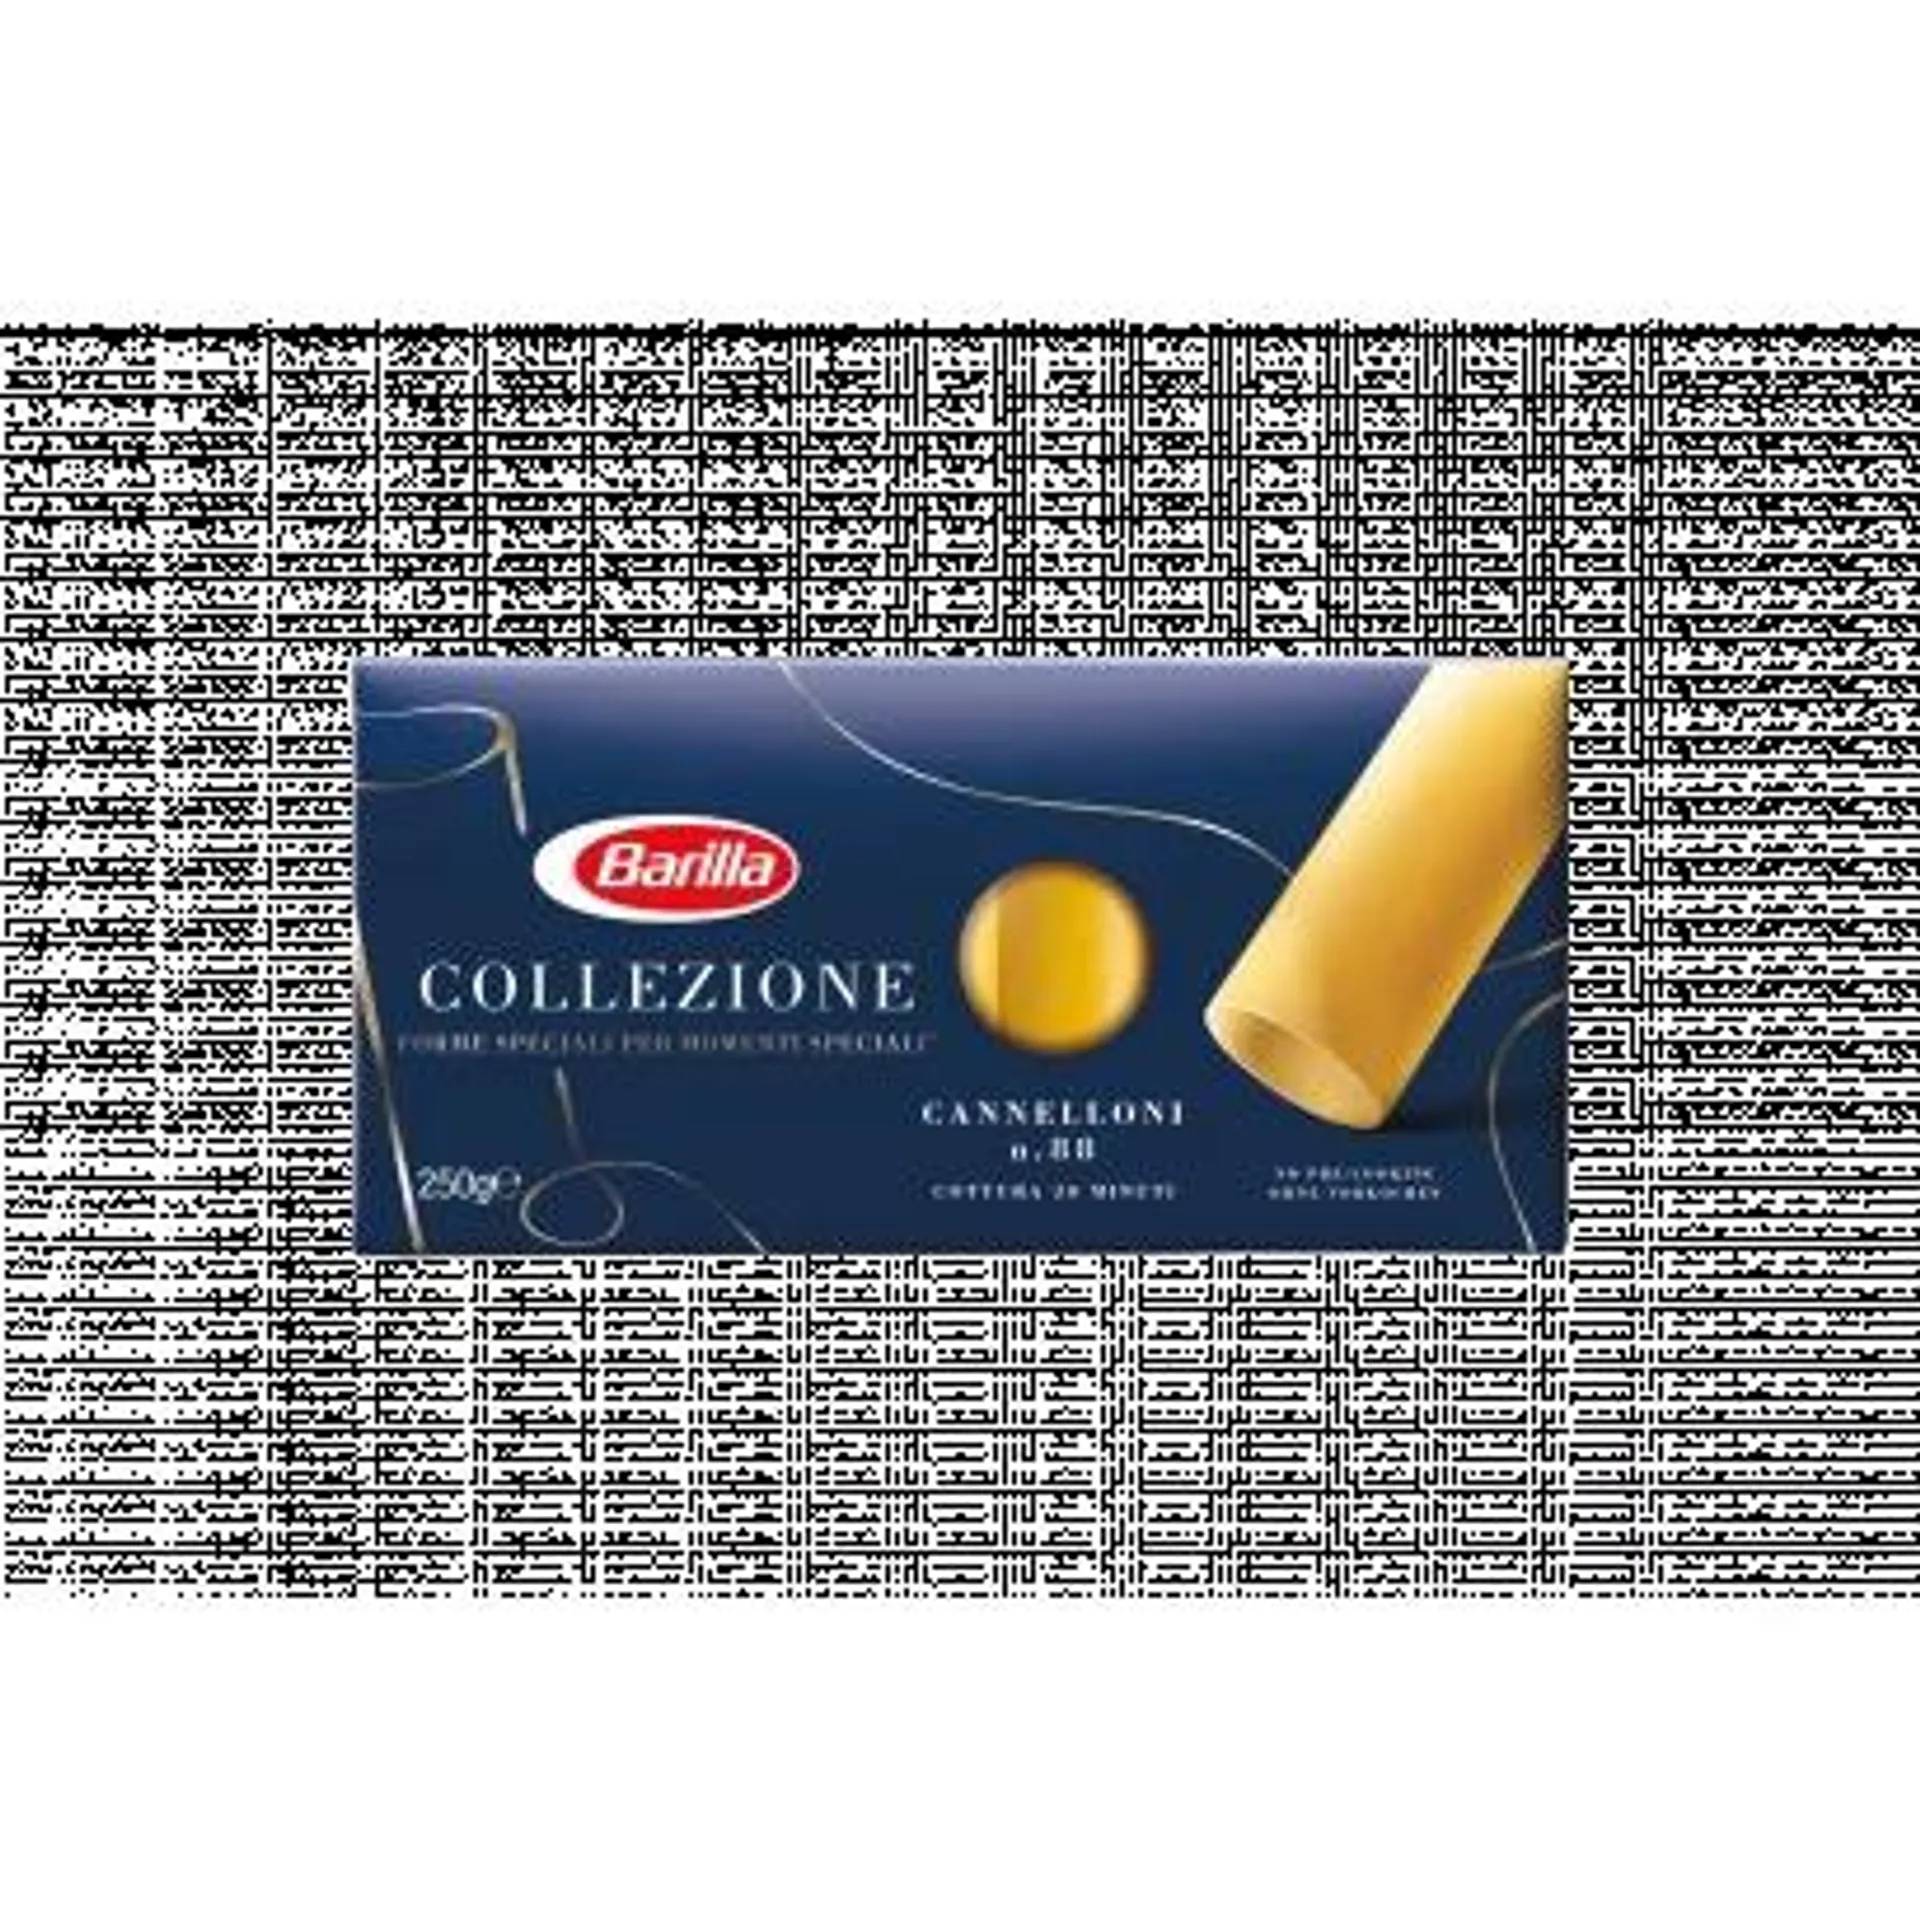 Barilla Cannelloni Durum Wheat Semolina Pasta 250 g